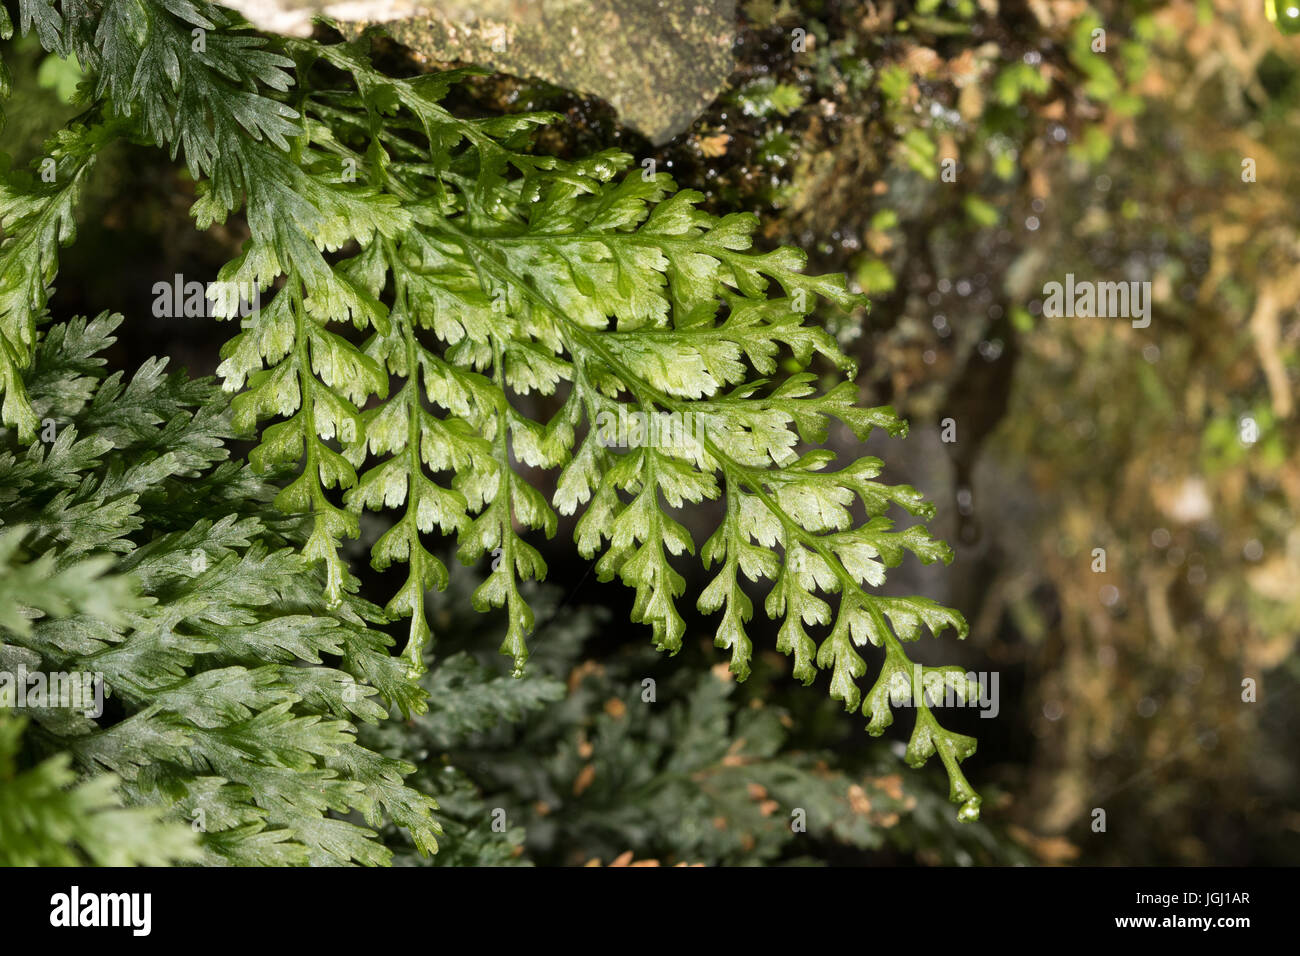 Killarney Fern (Trichomanes speciosum) sporophyte Stock Photo